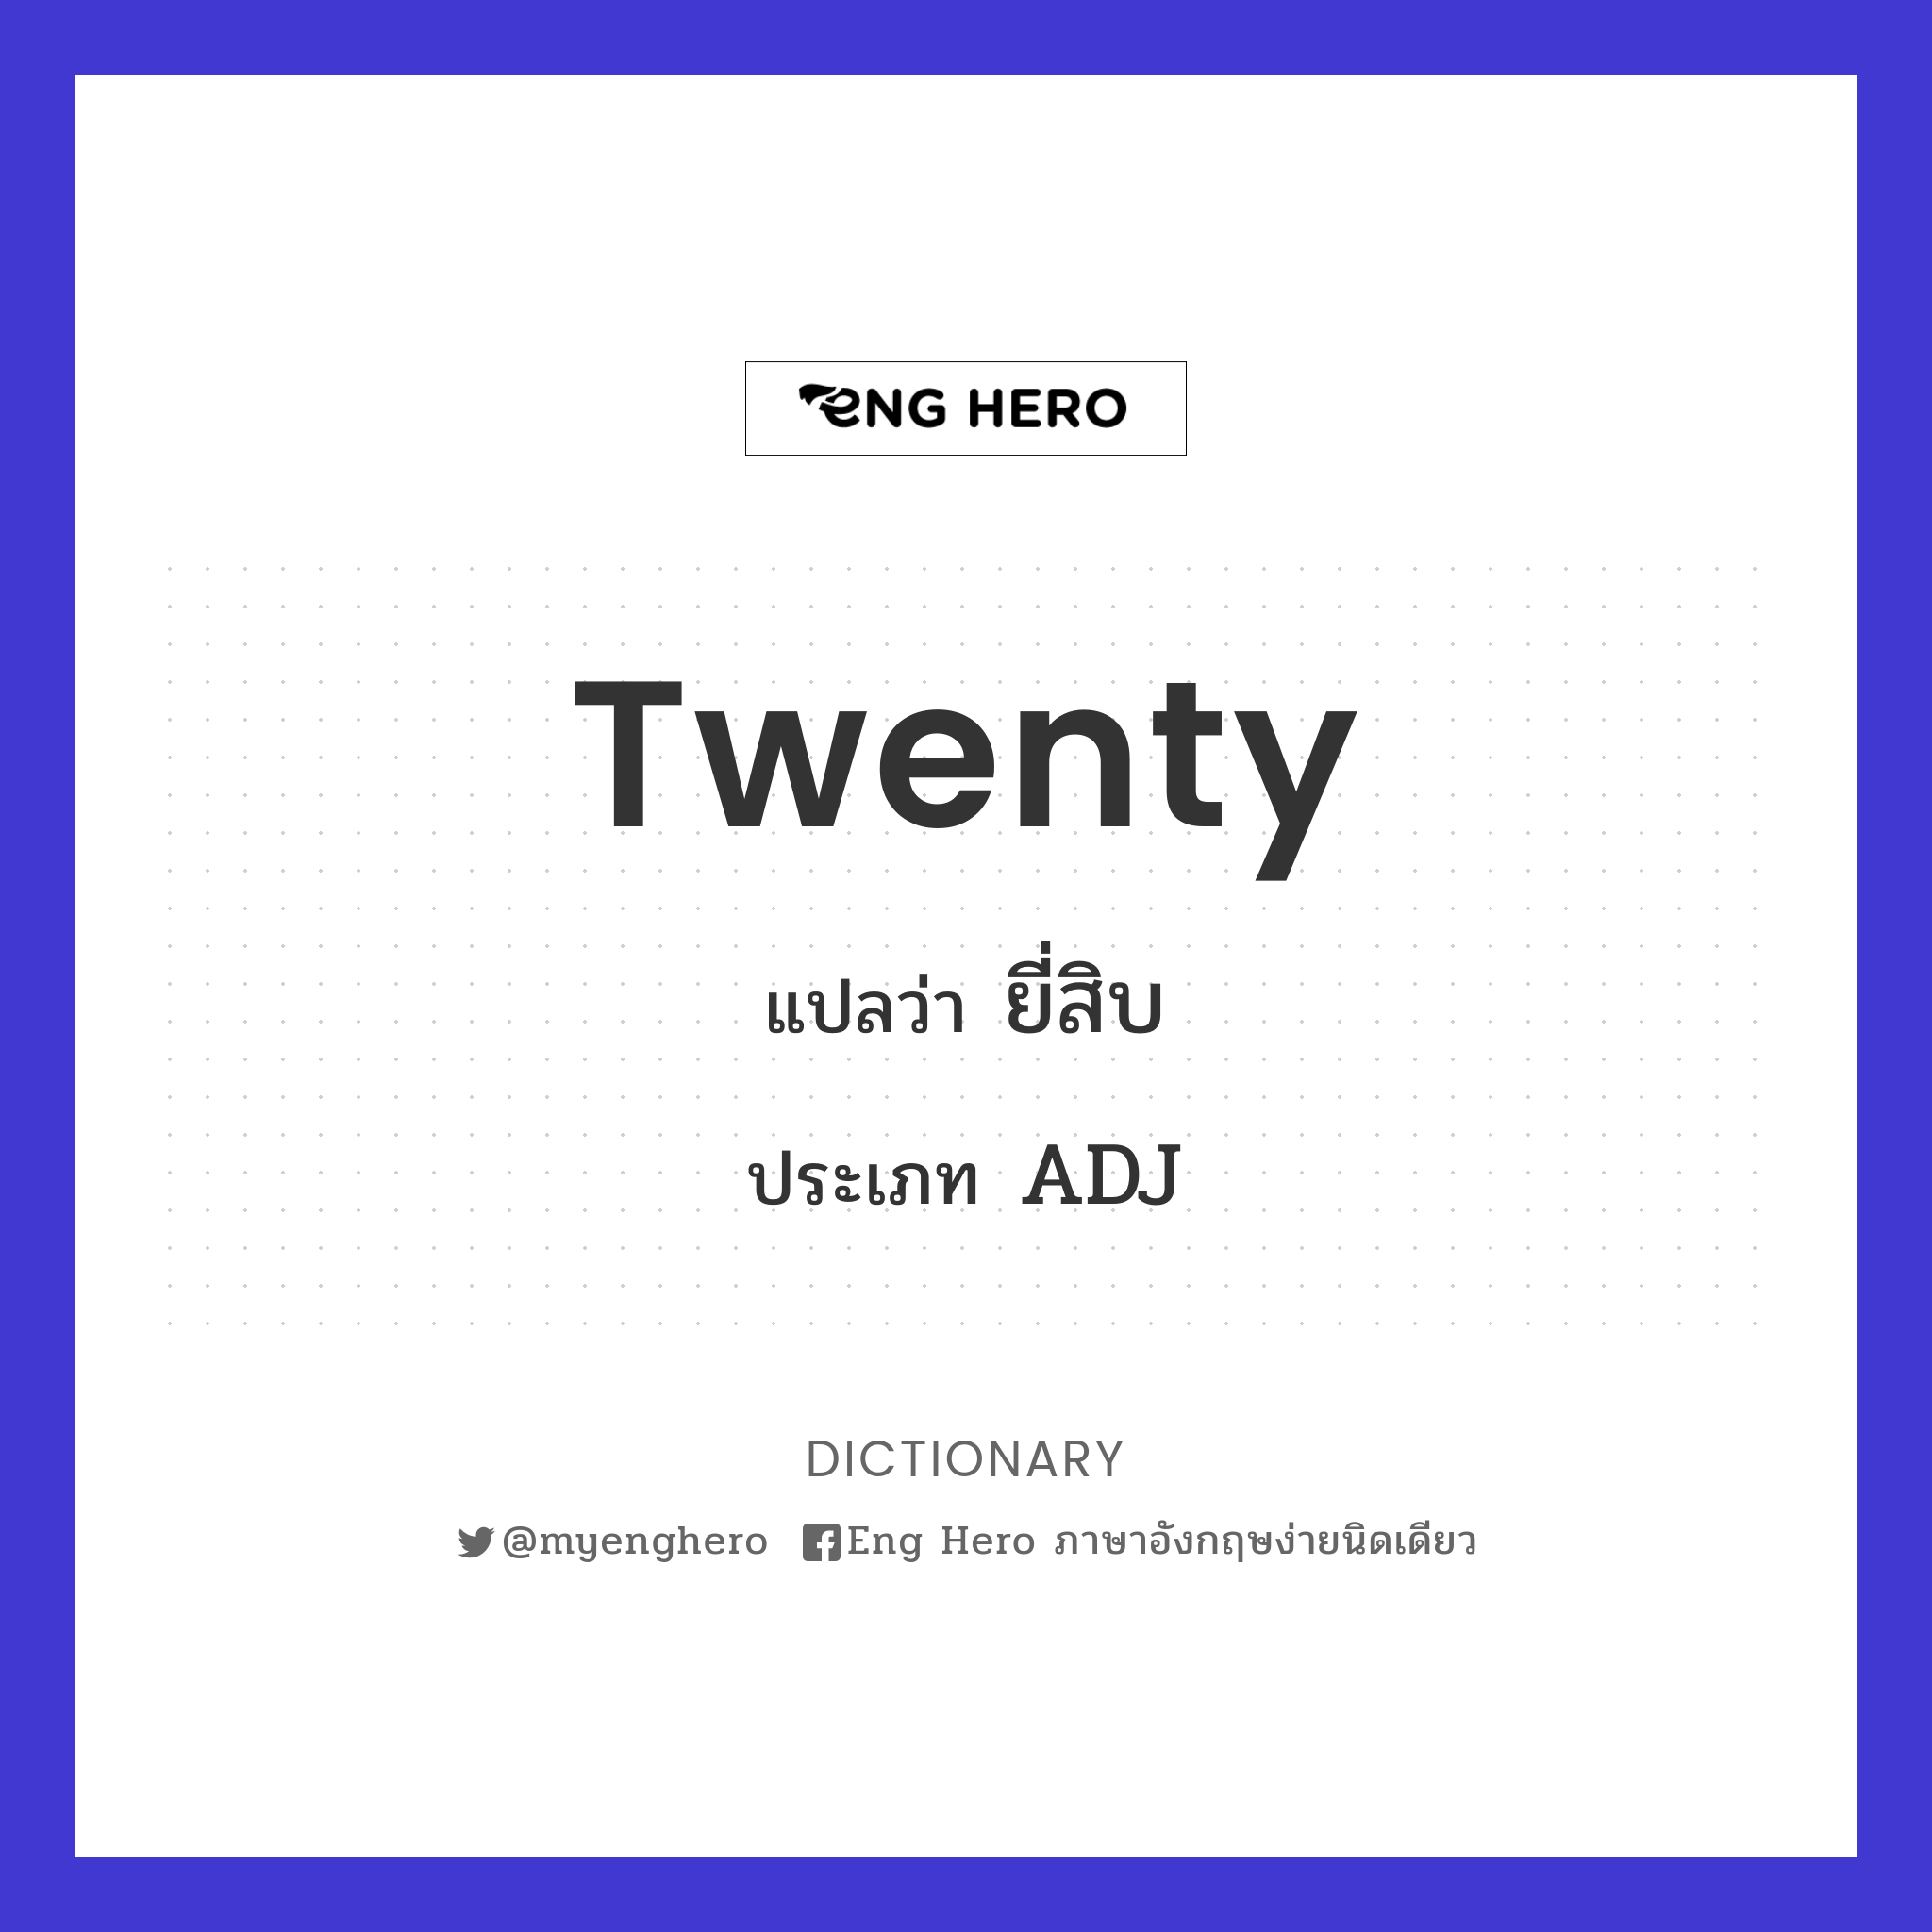 Twenty แปลว่า ยี่สิบ, เลขยี่สิบ, จำนวนยี่สิบ | Eng Hero เรียนภาษาอังกฤษ  ออนไลน์ ฟรี